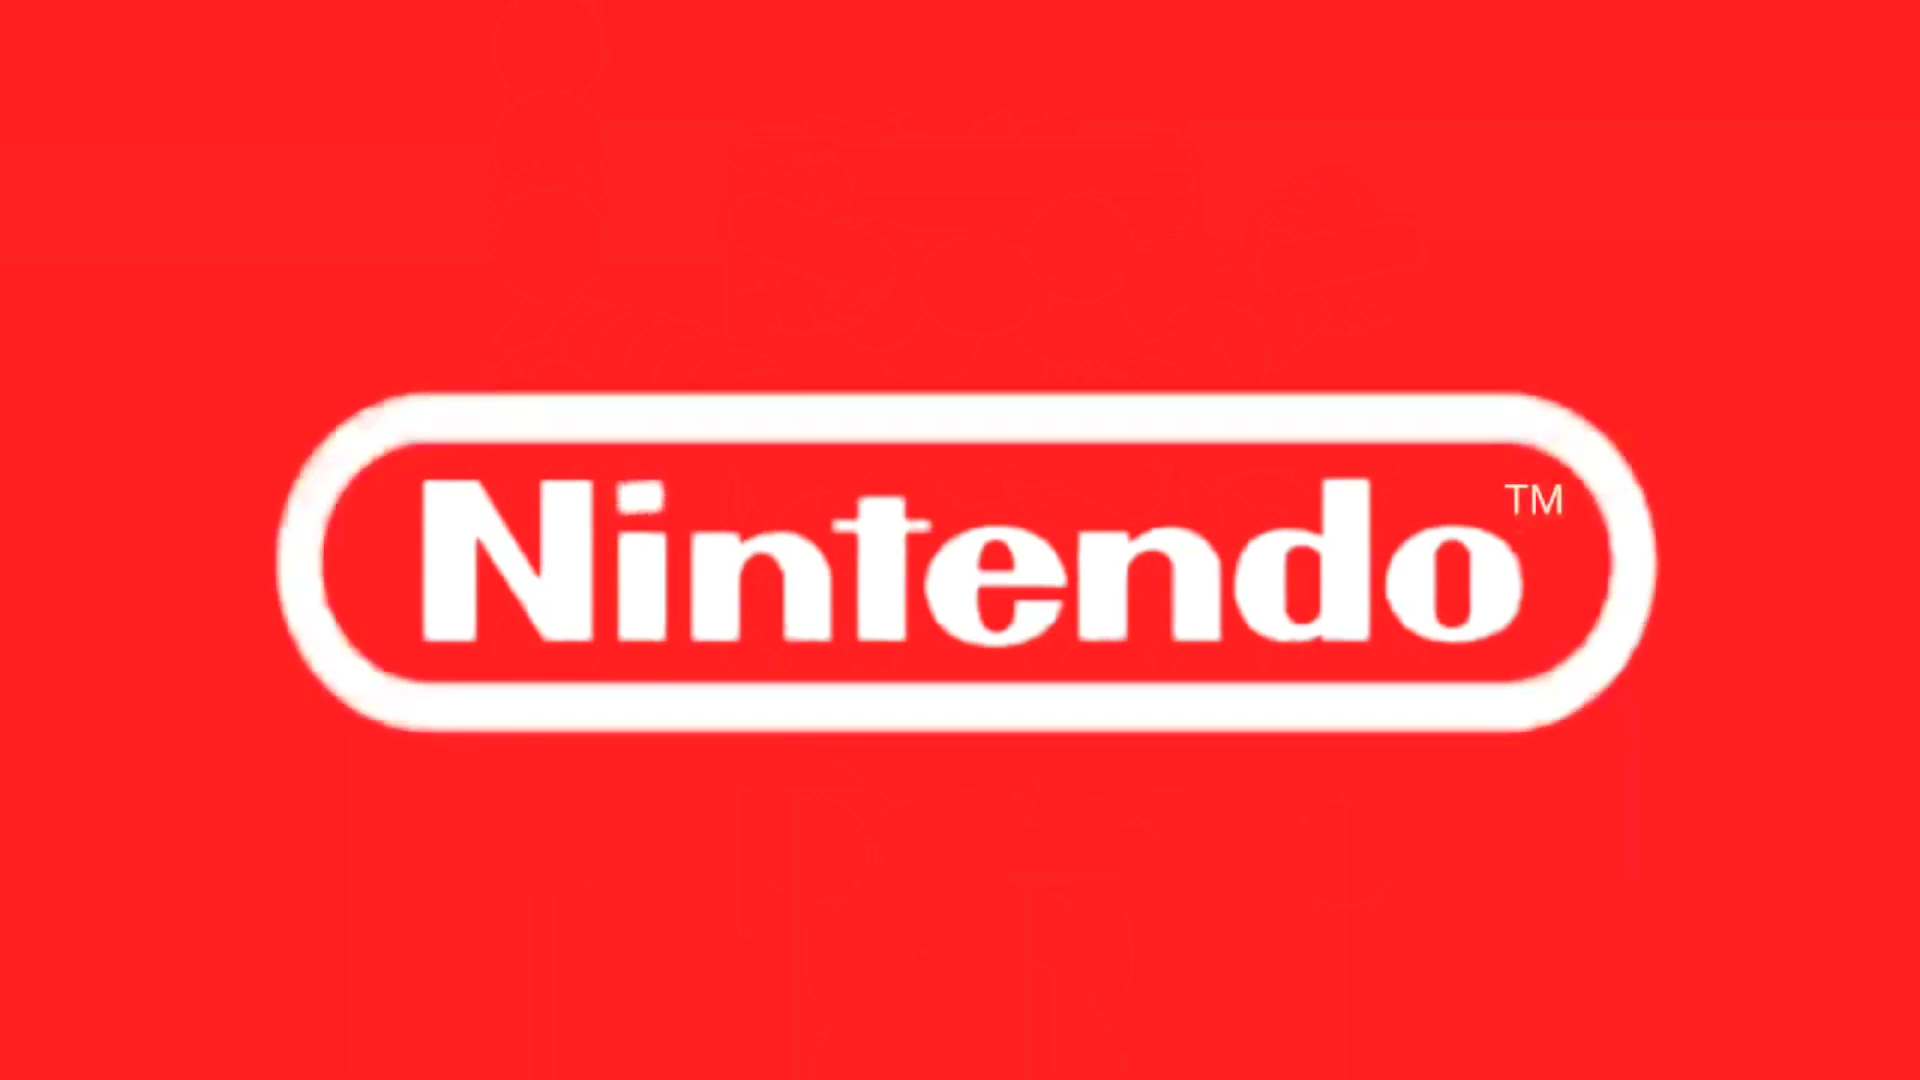 Nintendo promette agli italiani: "Non vi offenderemo!"